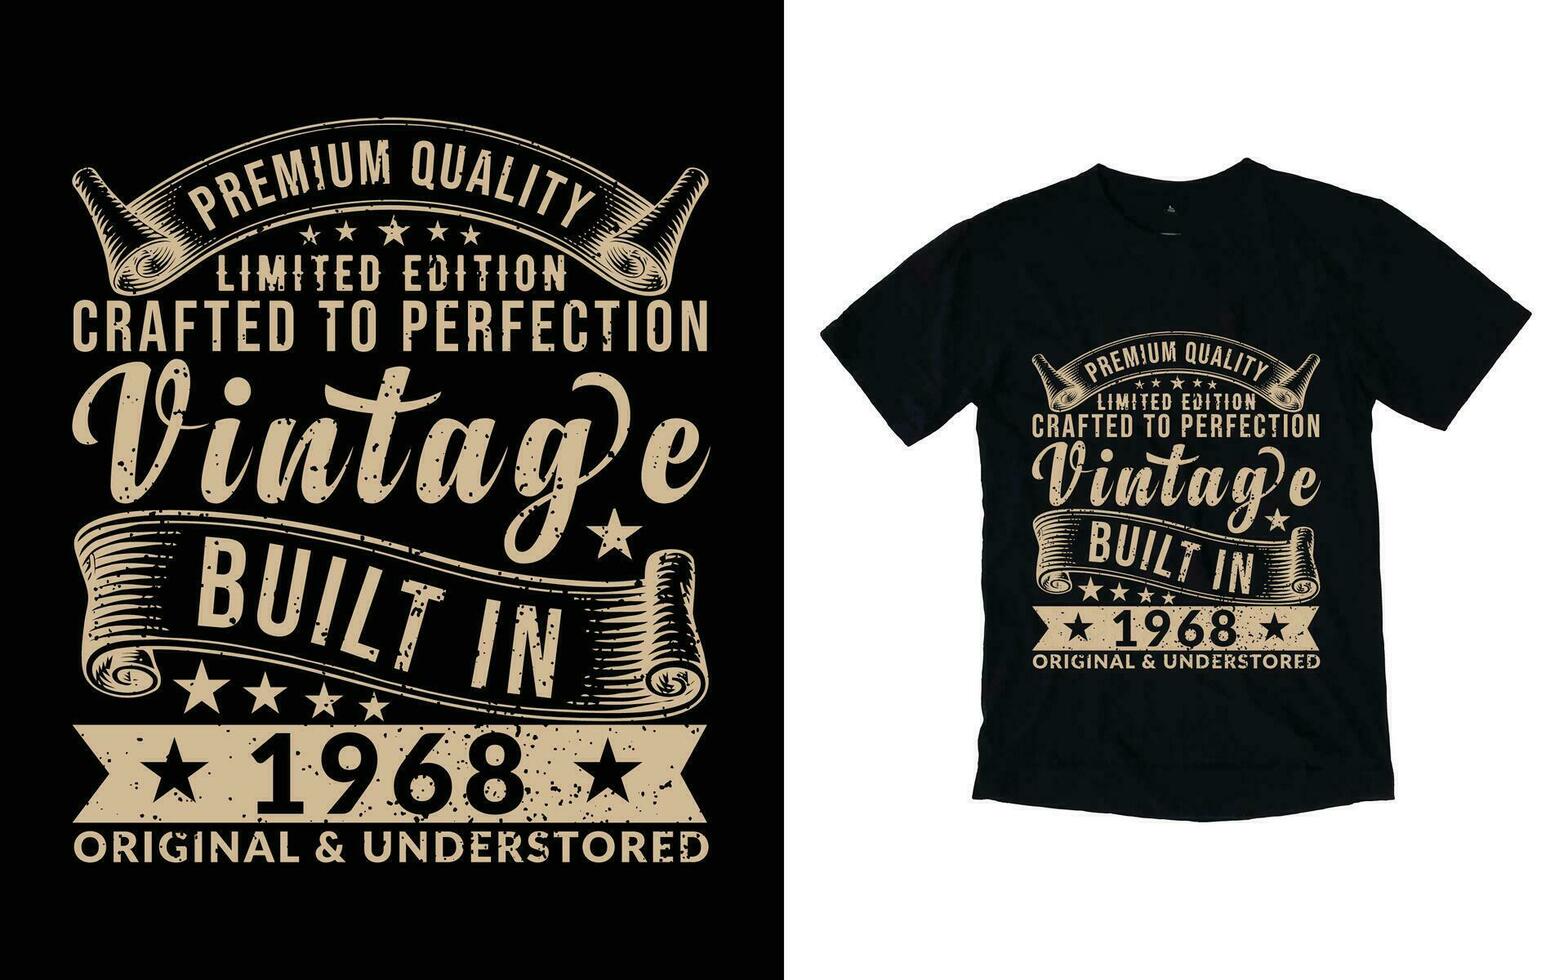 Vintage ▾ maglietta disegno, vecchio stile maglietta disegno, Vintage ▾ limitato edizione maglietta design vettore